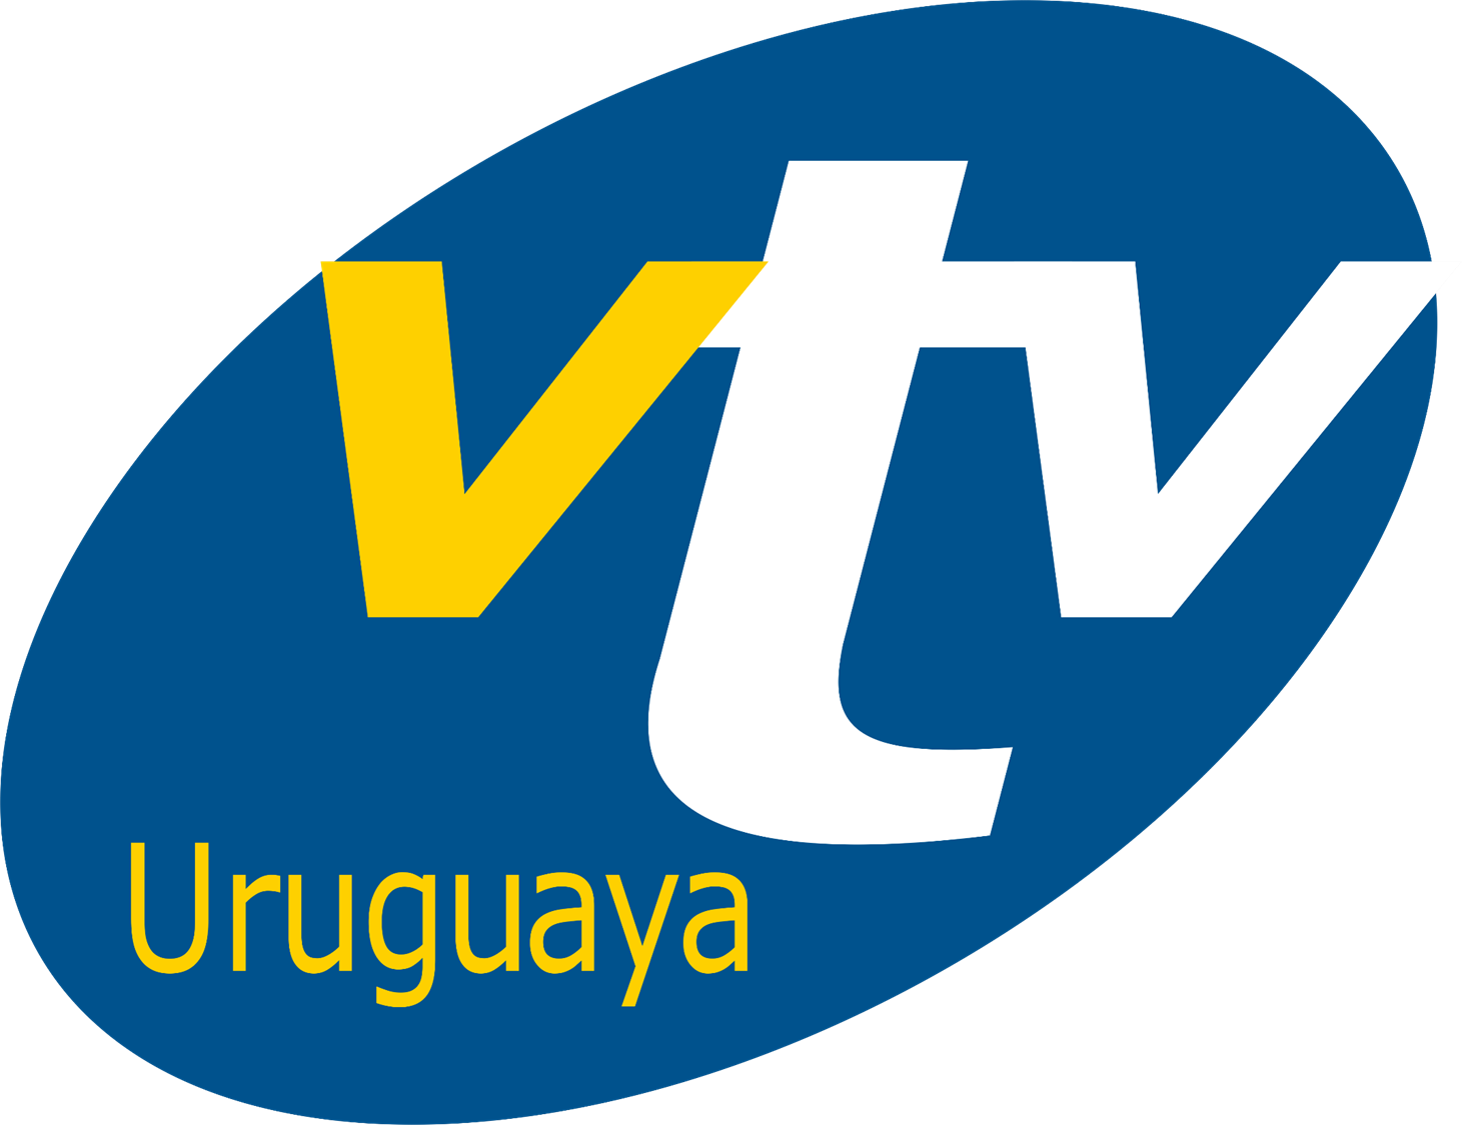 VTV (Uruguay) | Logopedia | Fandom